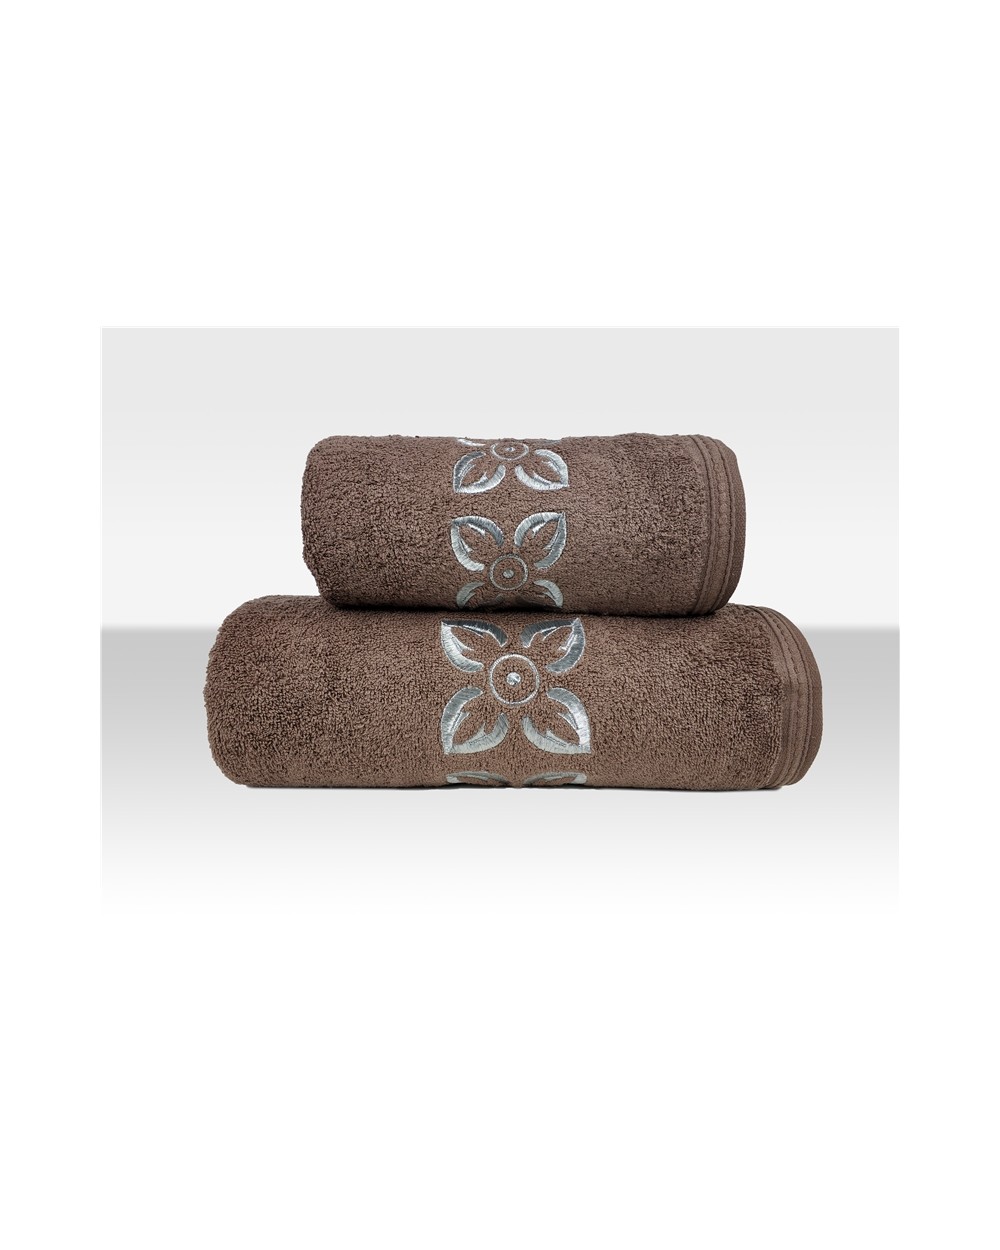 Ręcznik Victoria bawełna 50x90 brązowy